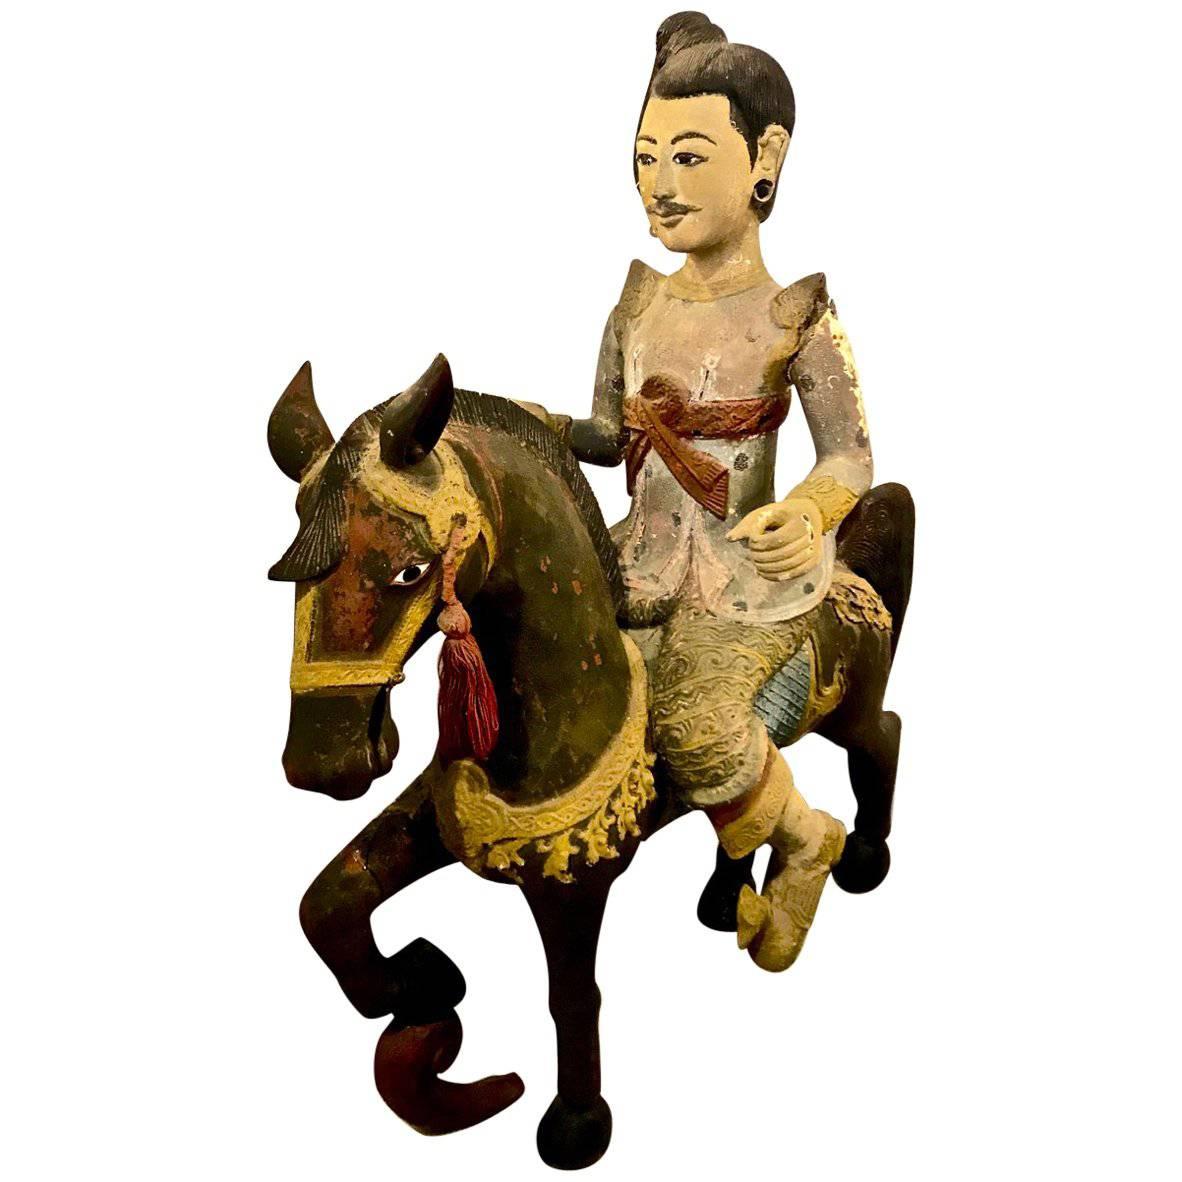 Indo-chinesische burmesische figürliche Skulptur, spätes Jahrhundert